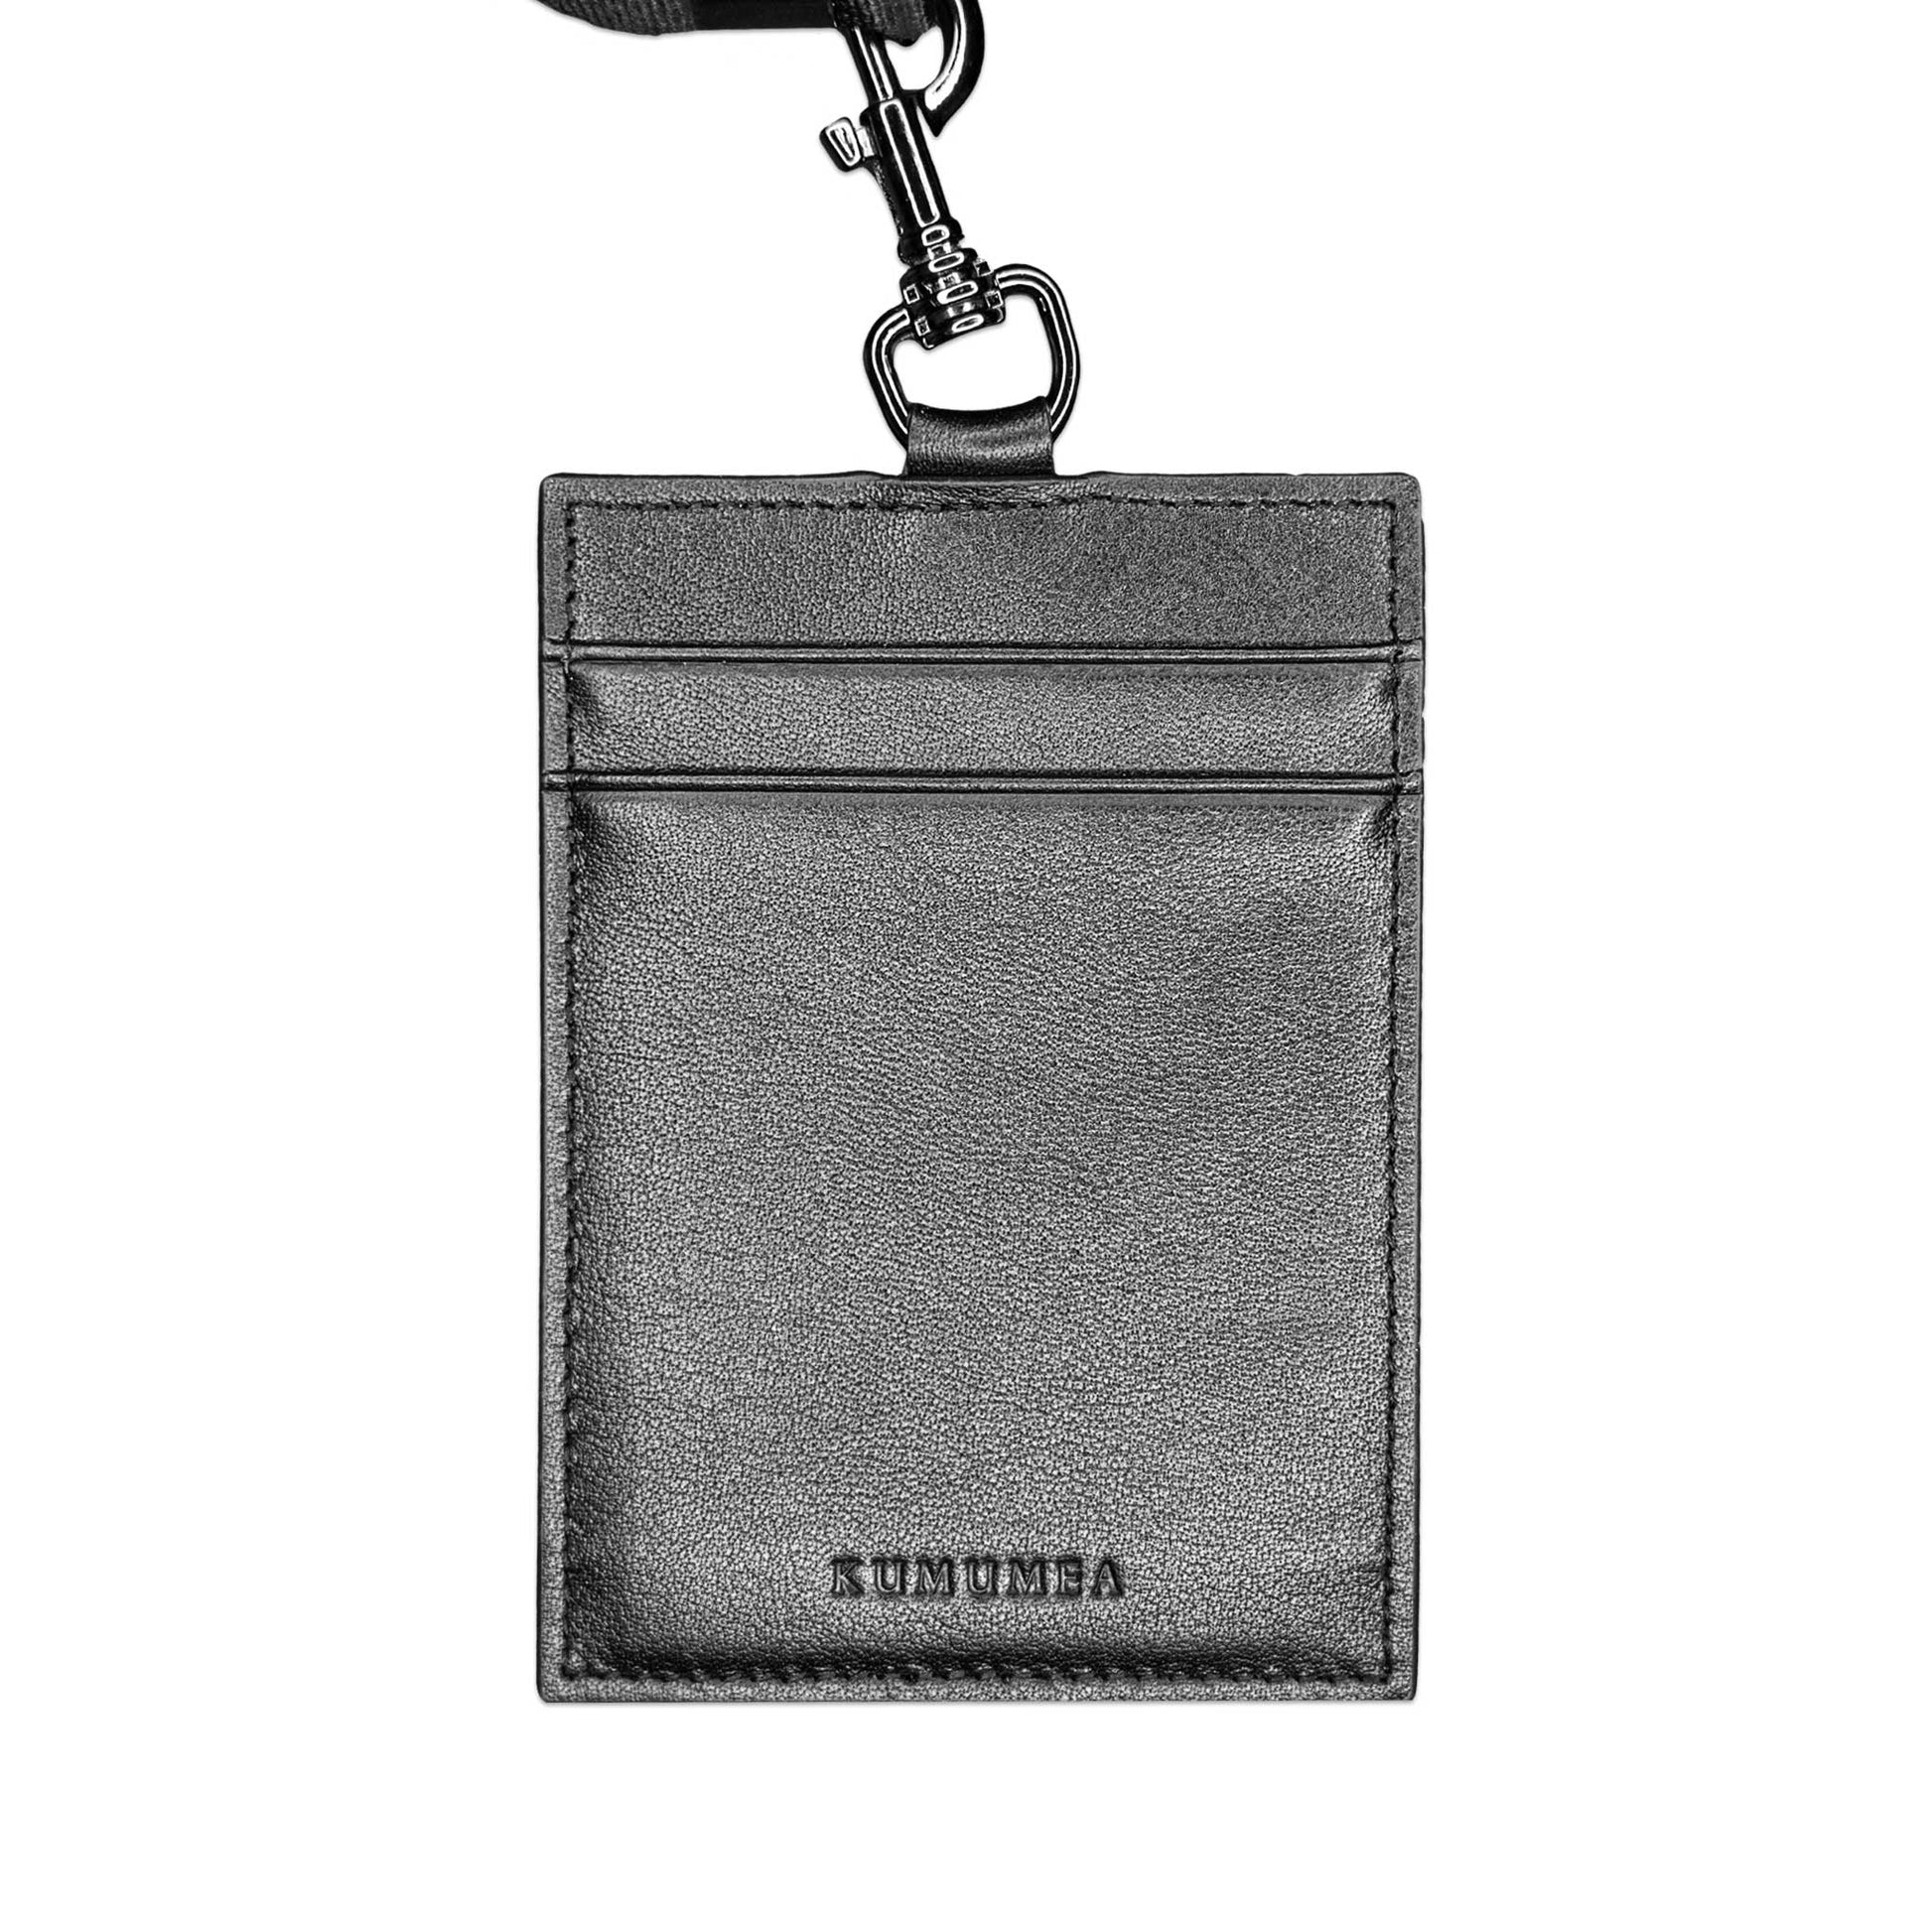 Luxury Top Grain Leather Handmade RFID Lanyard - Black & Silver